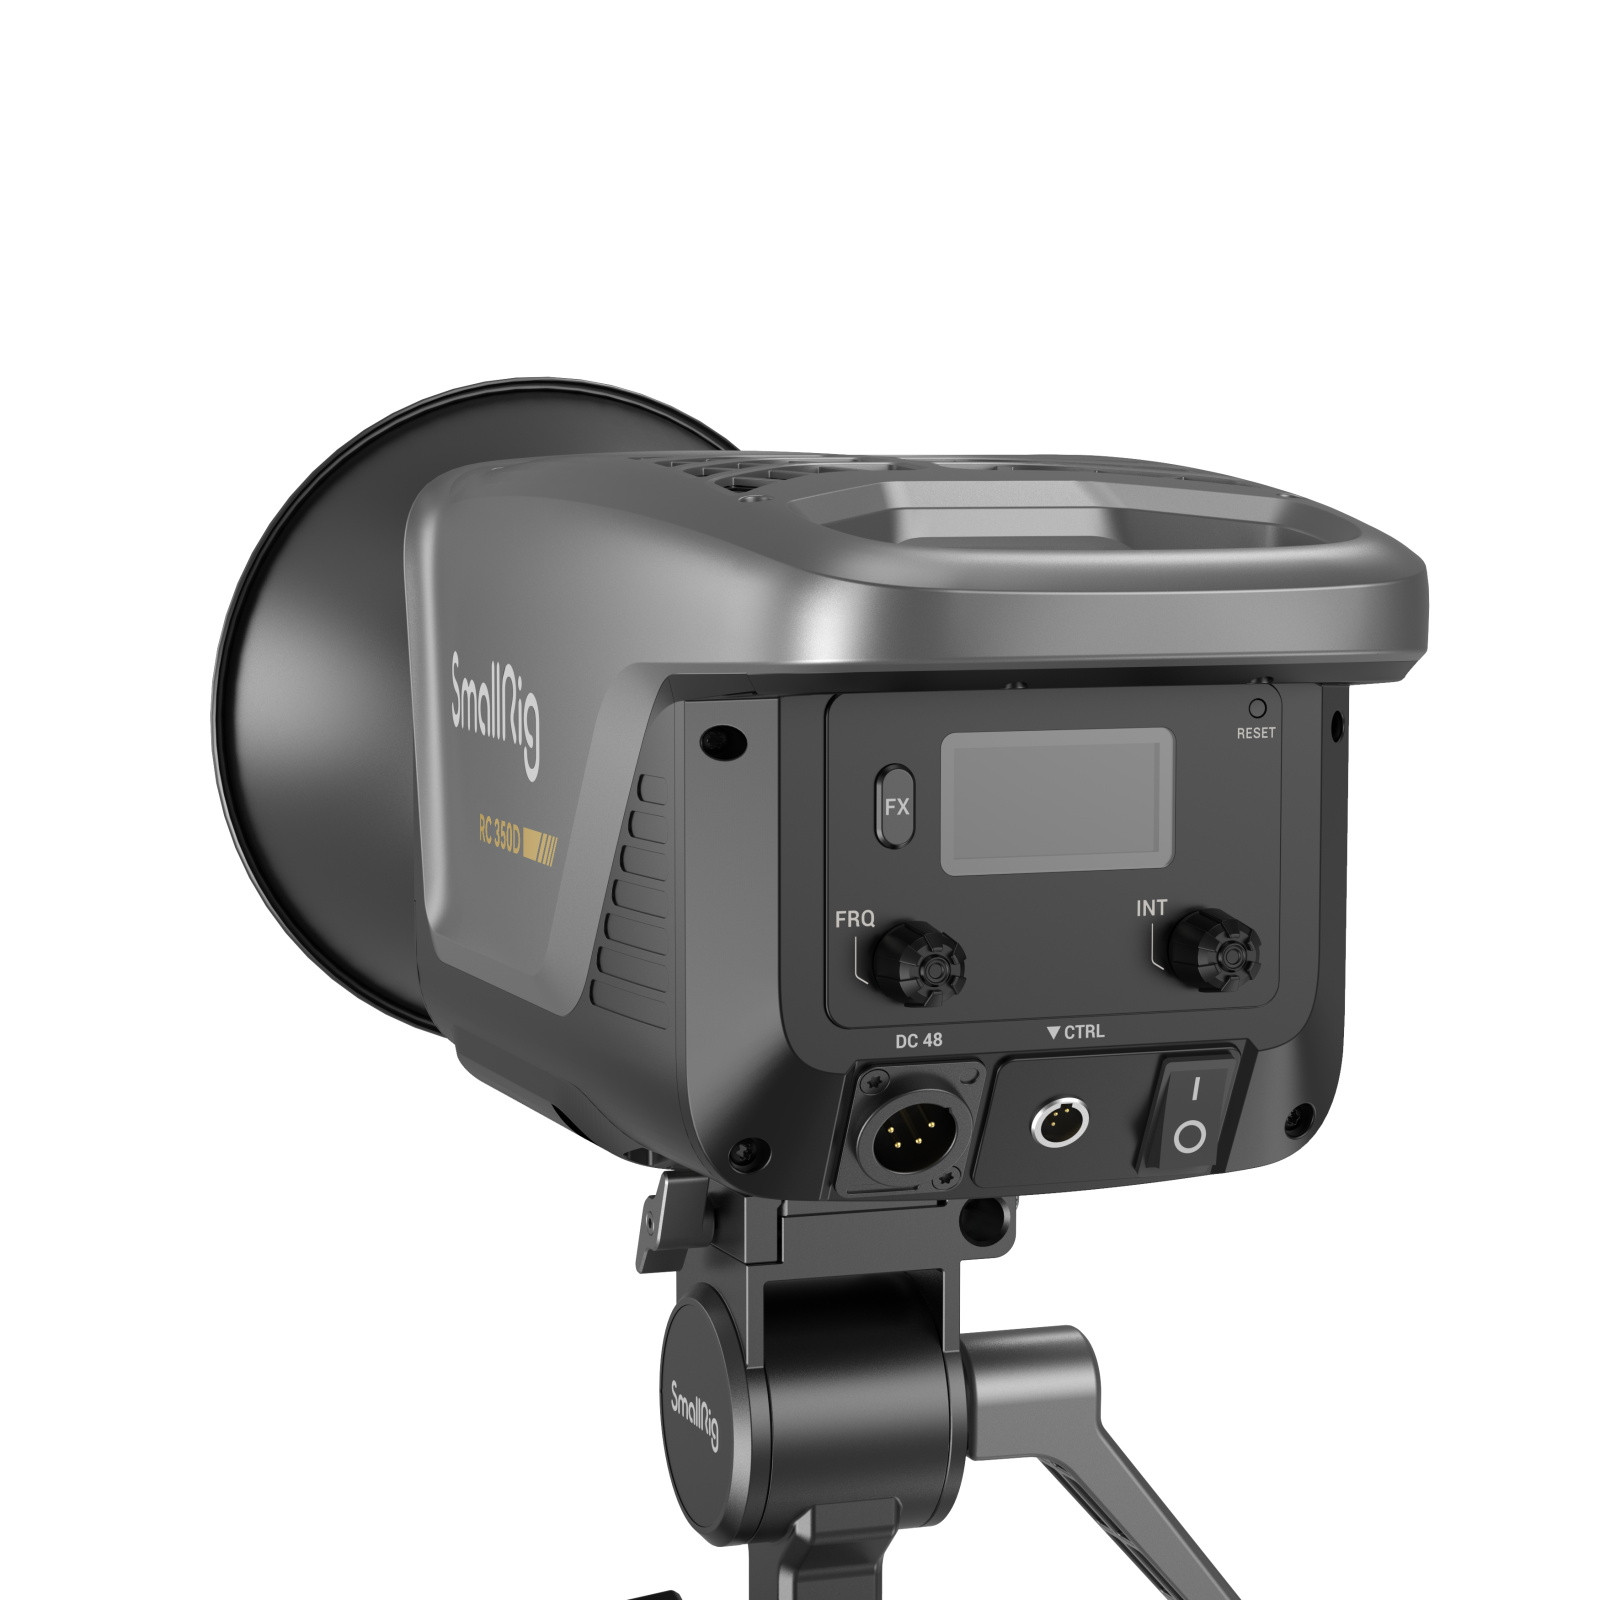 SmallRig RC350D COB LED Video Light (US) 3960